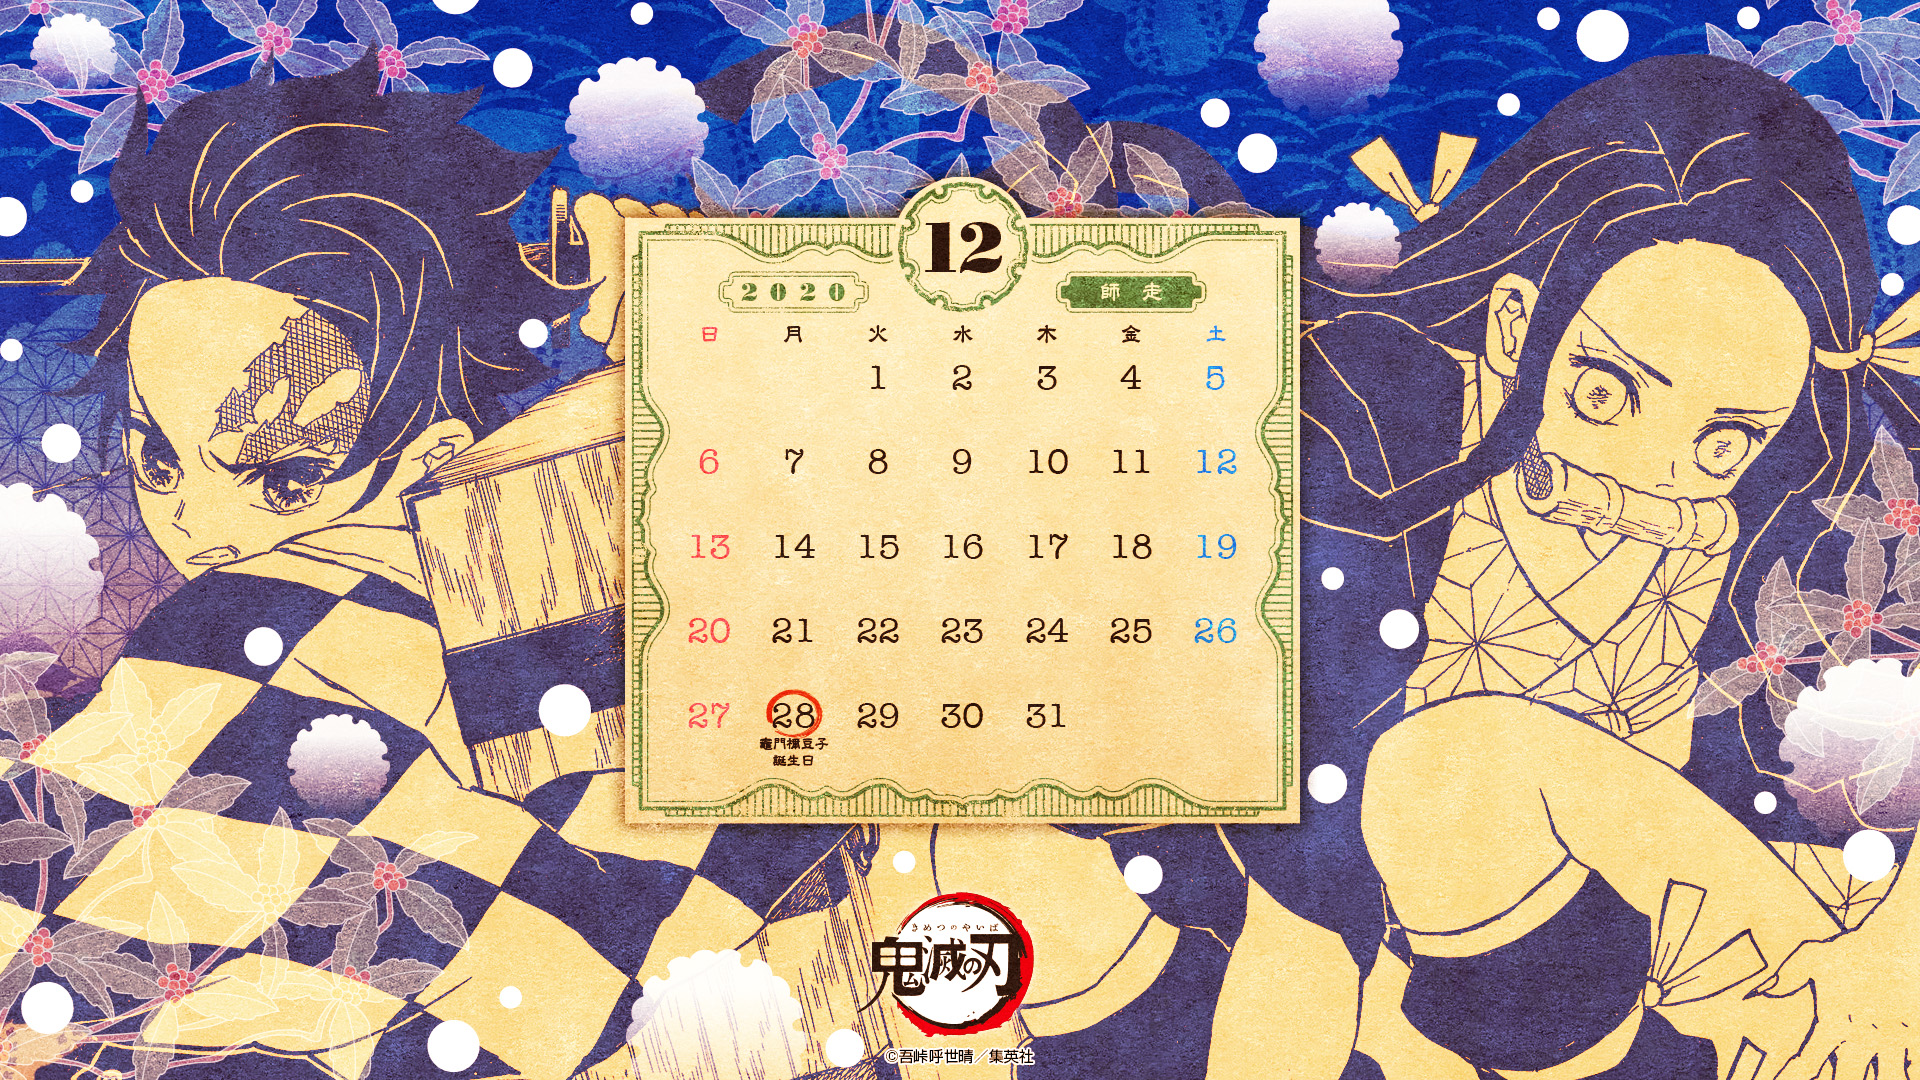 12月28日は禰豆子の誕生日 鬼滅の刃 カレンダー壁紙12月号の配布を開始 Game Watch